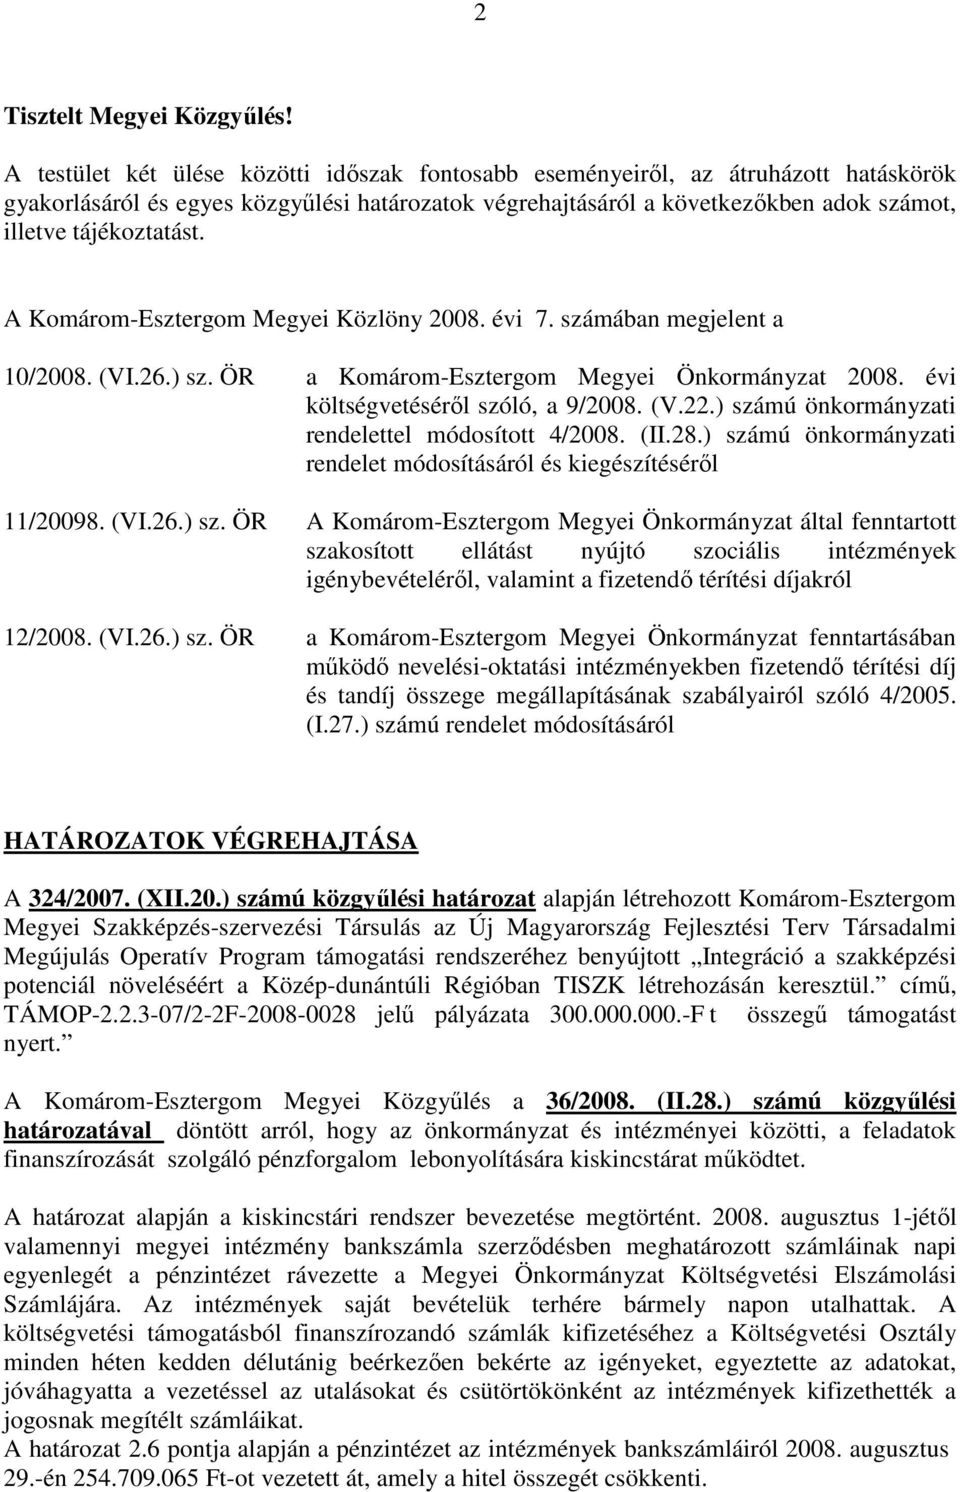 A Komárom-Esztergom Megyei Közlöny 2008. évi 7. számában megjelent a 10/2008. (VI.26.) sz. ÖR a Komárom-Esztergom Megyei Önkormányzat 2008. évi költségvetésérıl szóló, a 9/2008. (V.22.